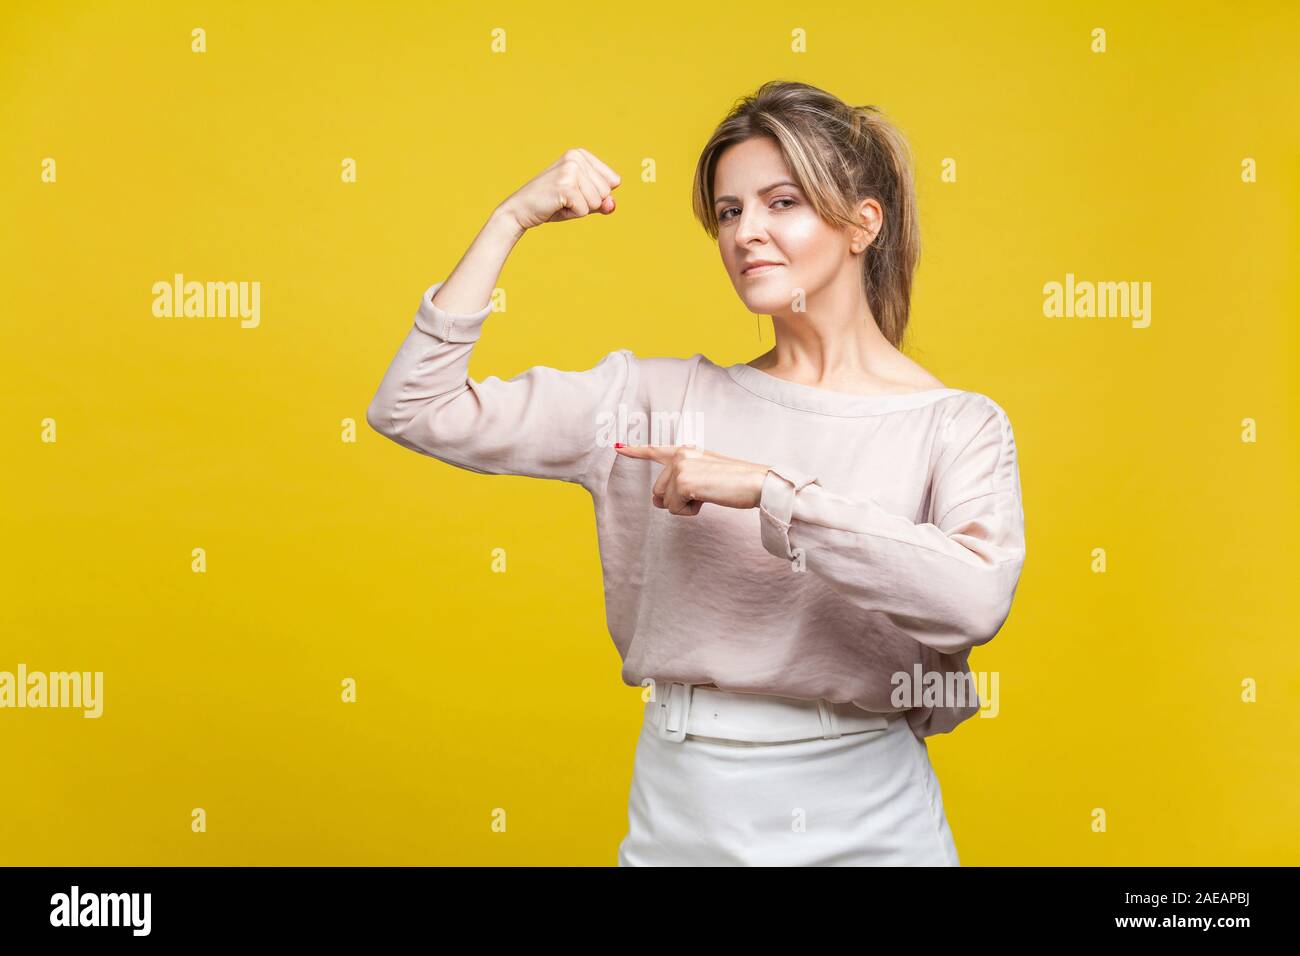 Soy fuerte. Retrato de mujer poderosa en blusa casual de pie, señalando a su mano como mostrando bíceps, buscando seguros e independientes del interior. Foto de stock